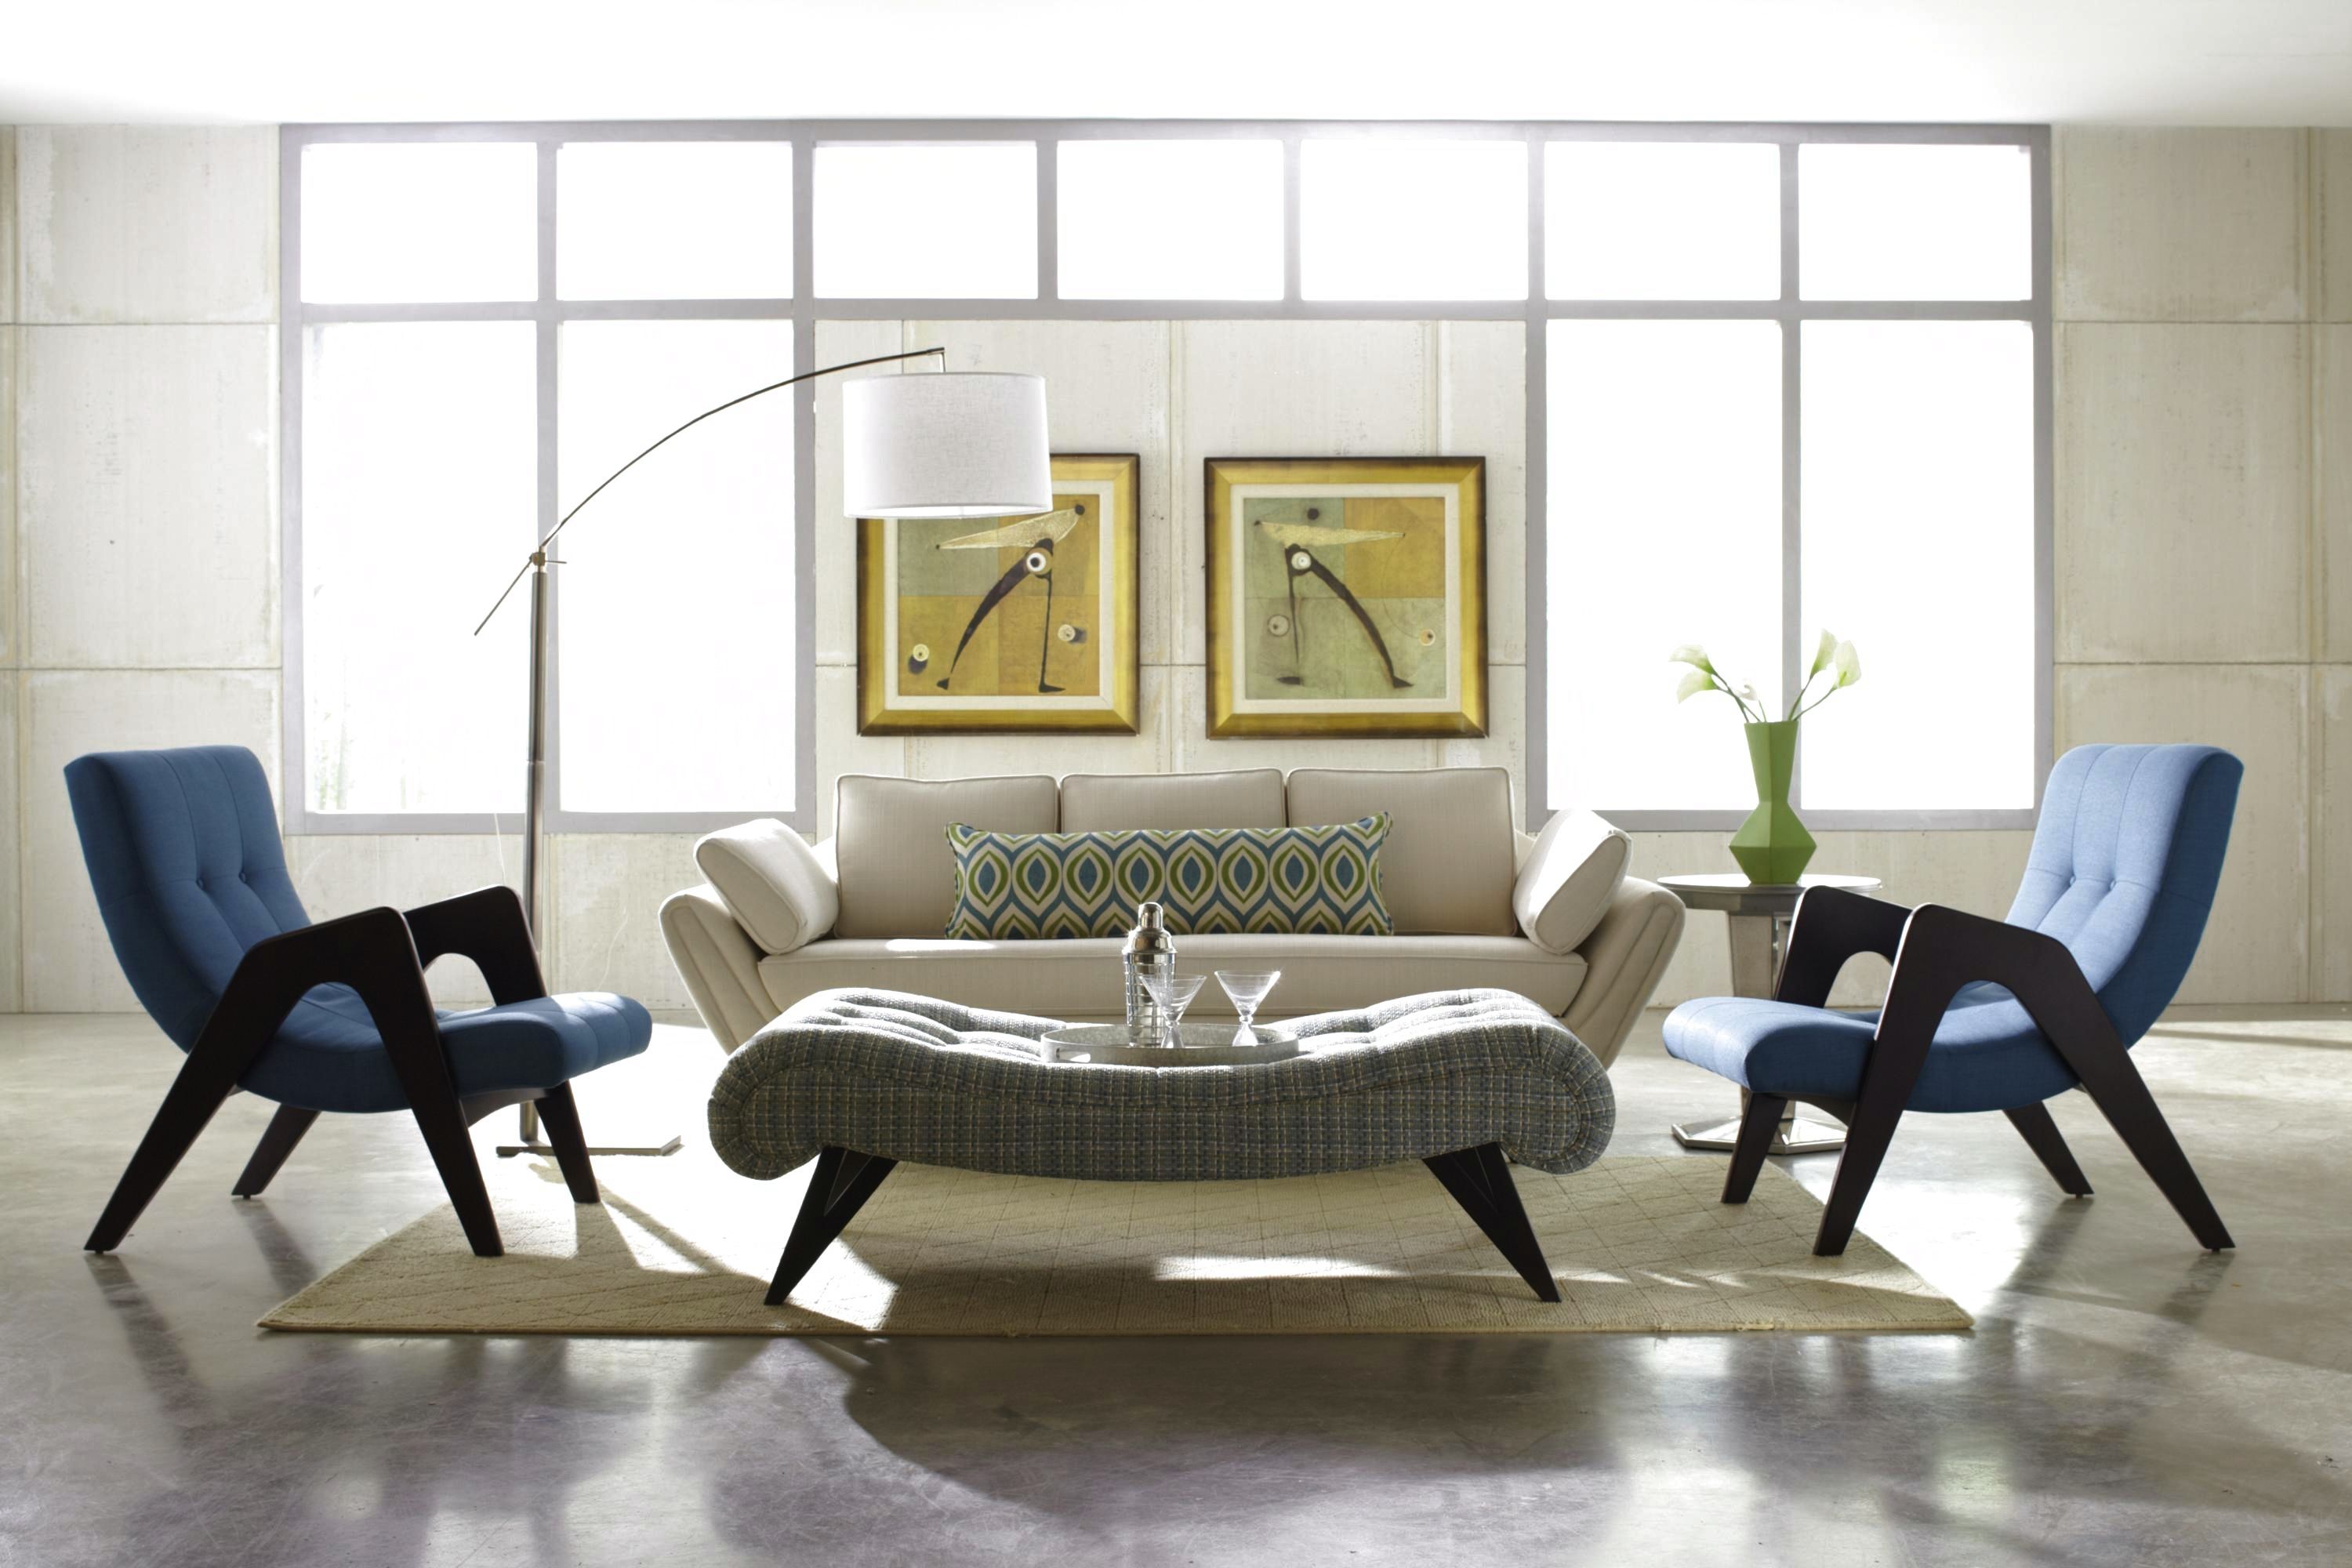 living room ergonomic furniture